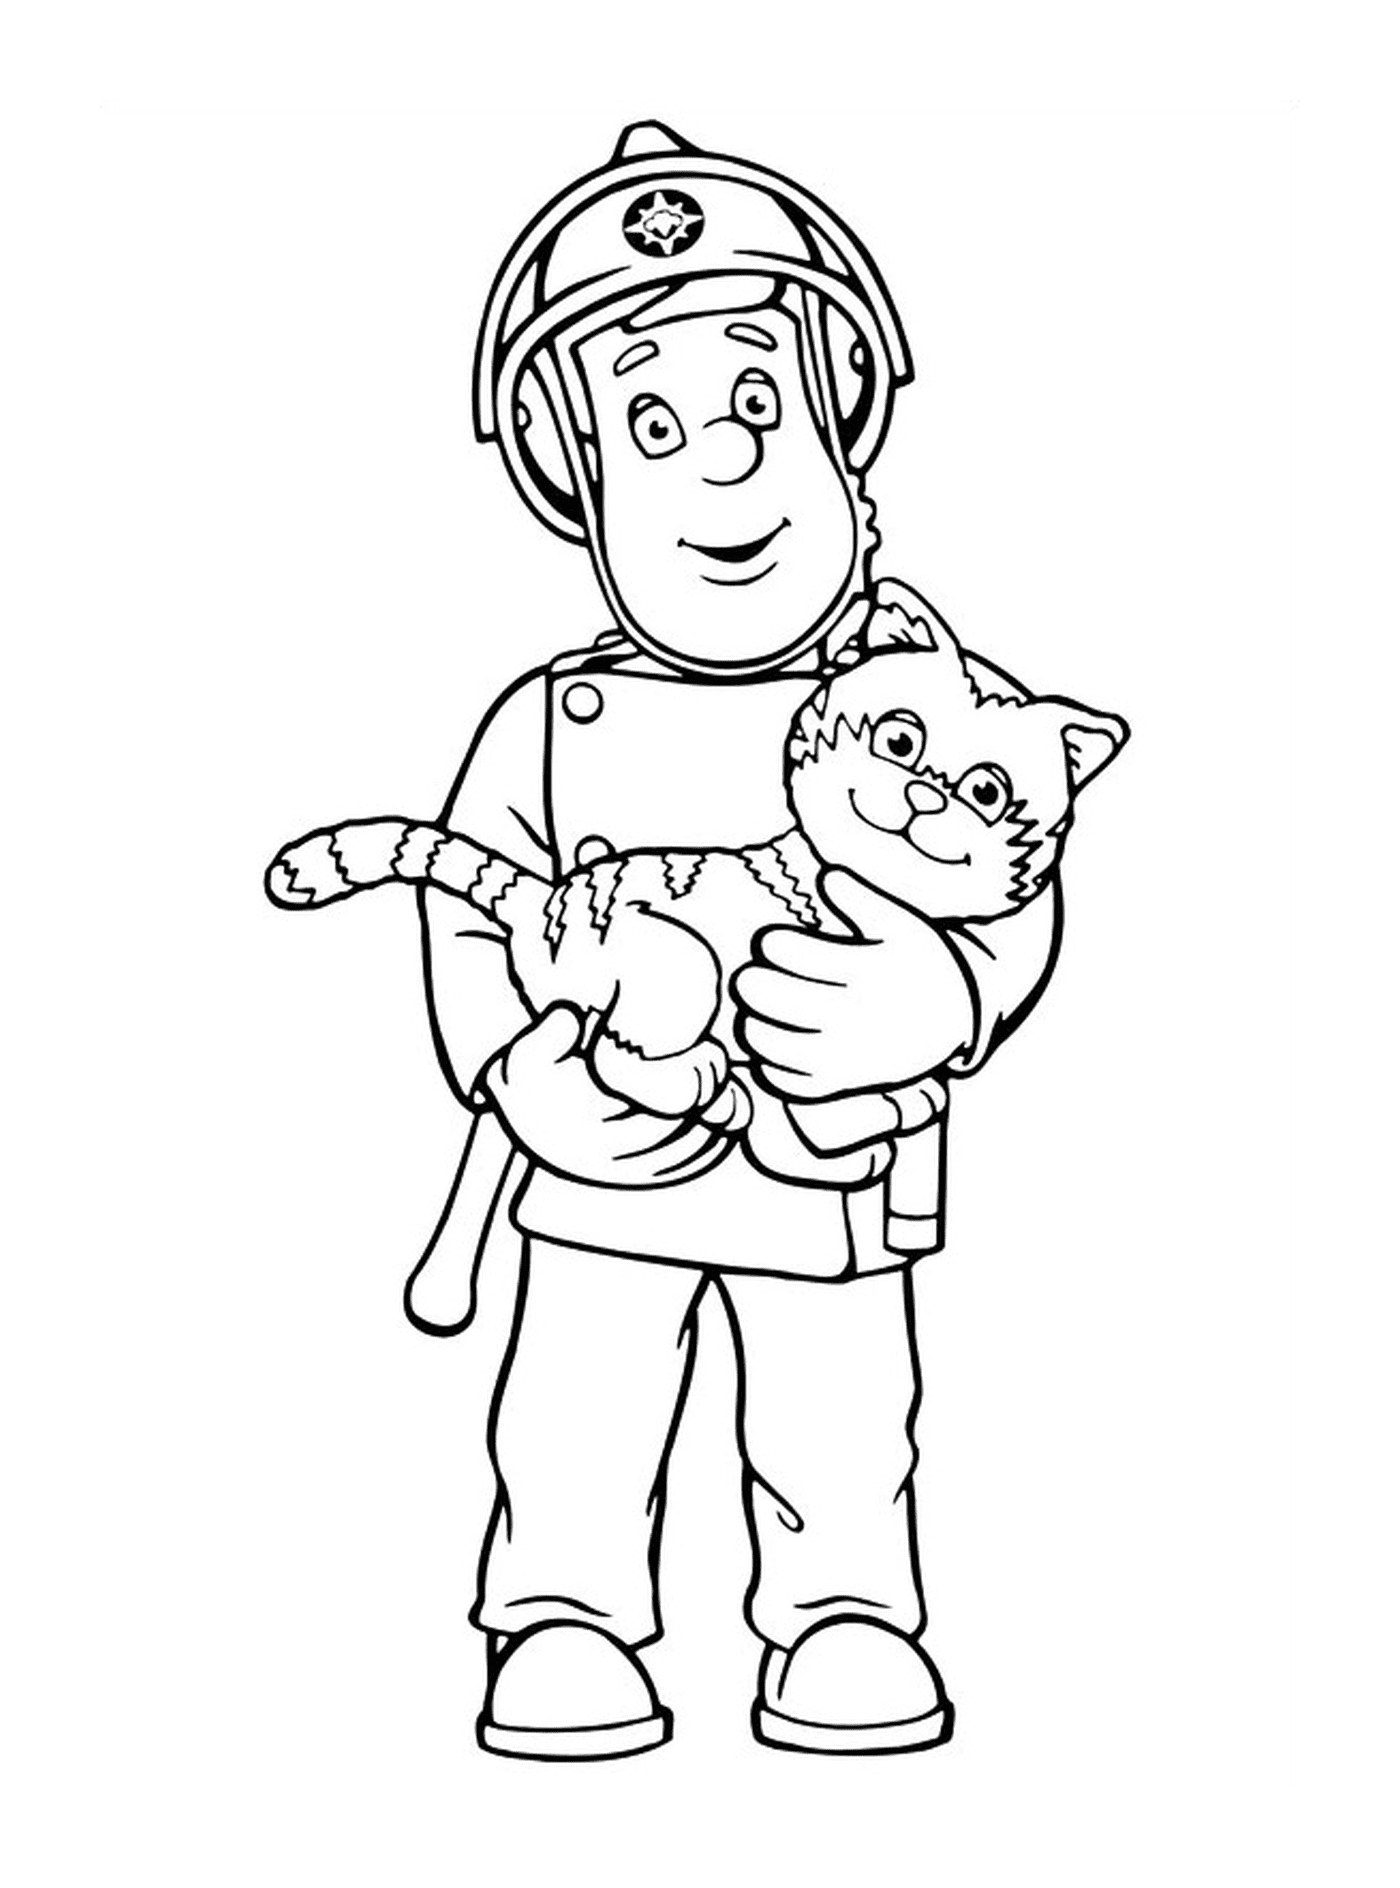  男人抱着一只猫在他的怀里 